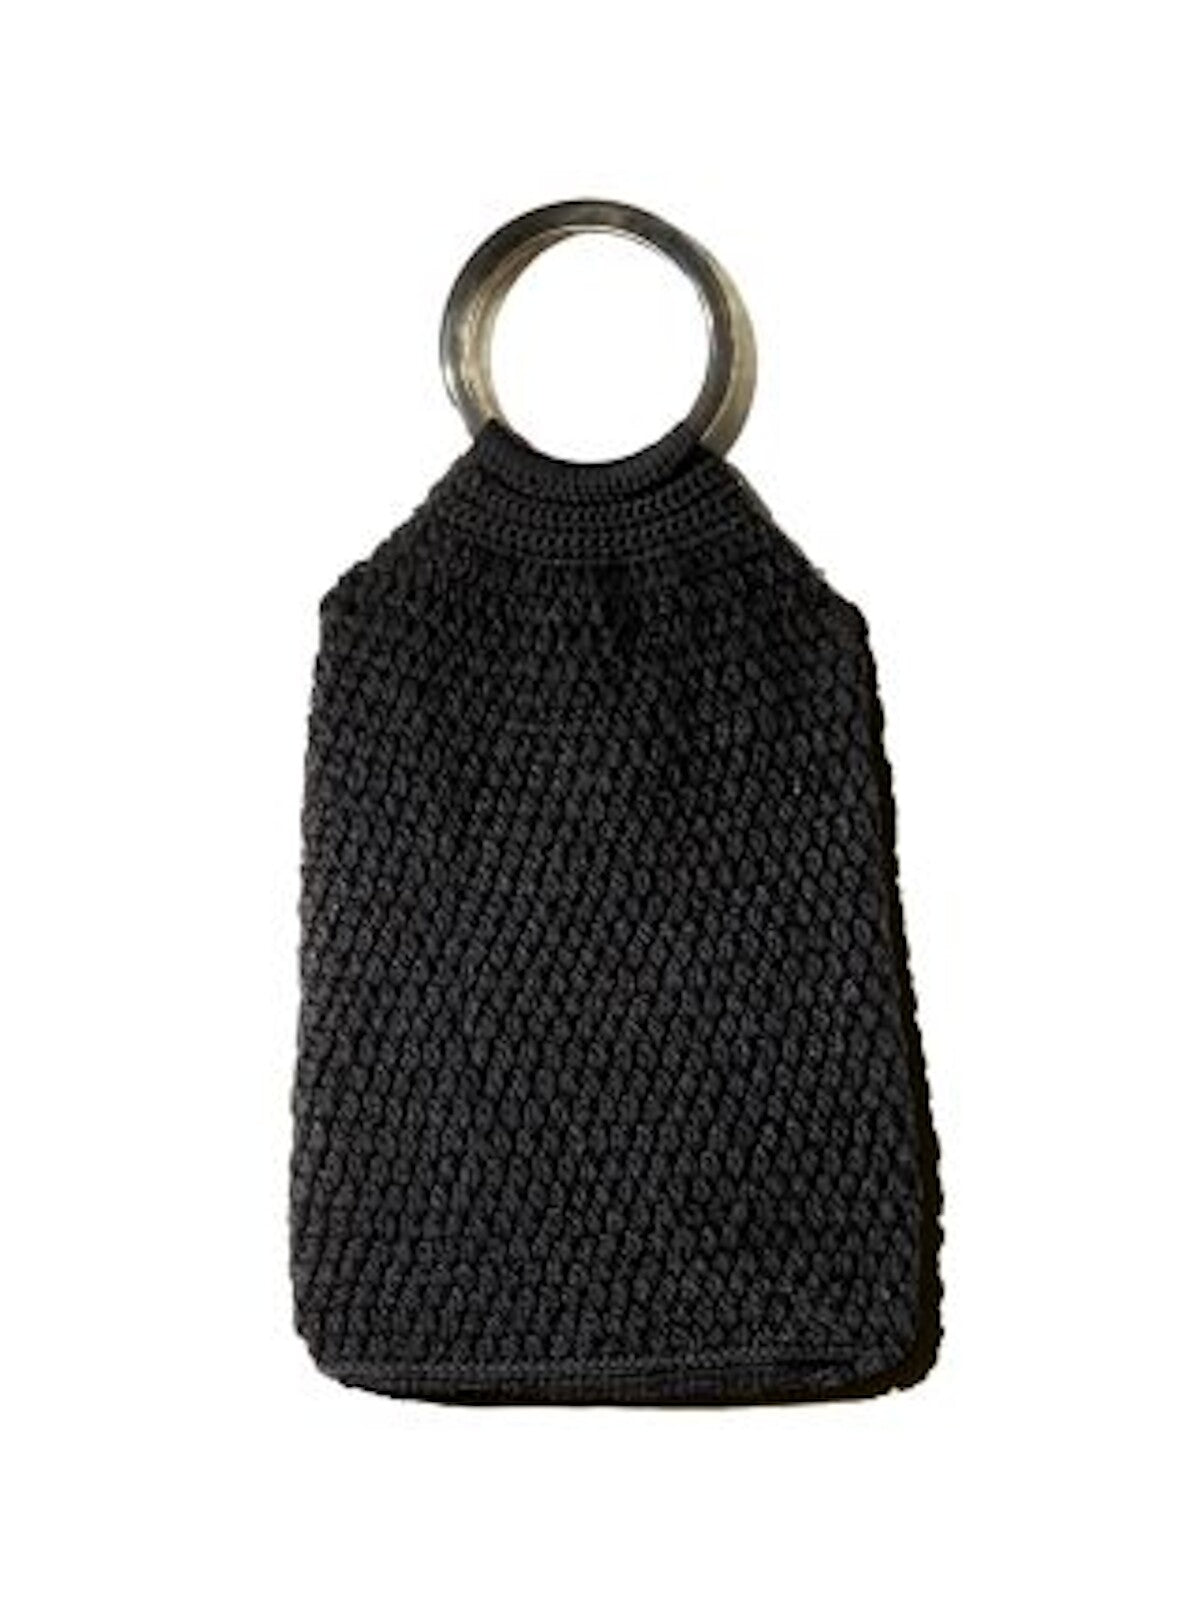 Binge Women's Black Crochet Crochet Double Flat Strap Handbag Purse